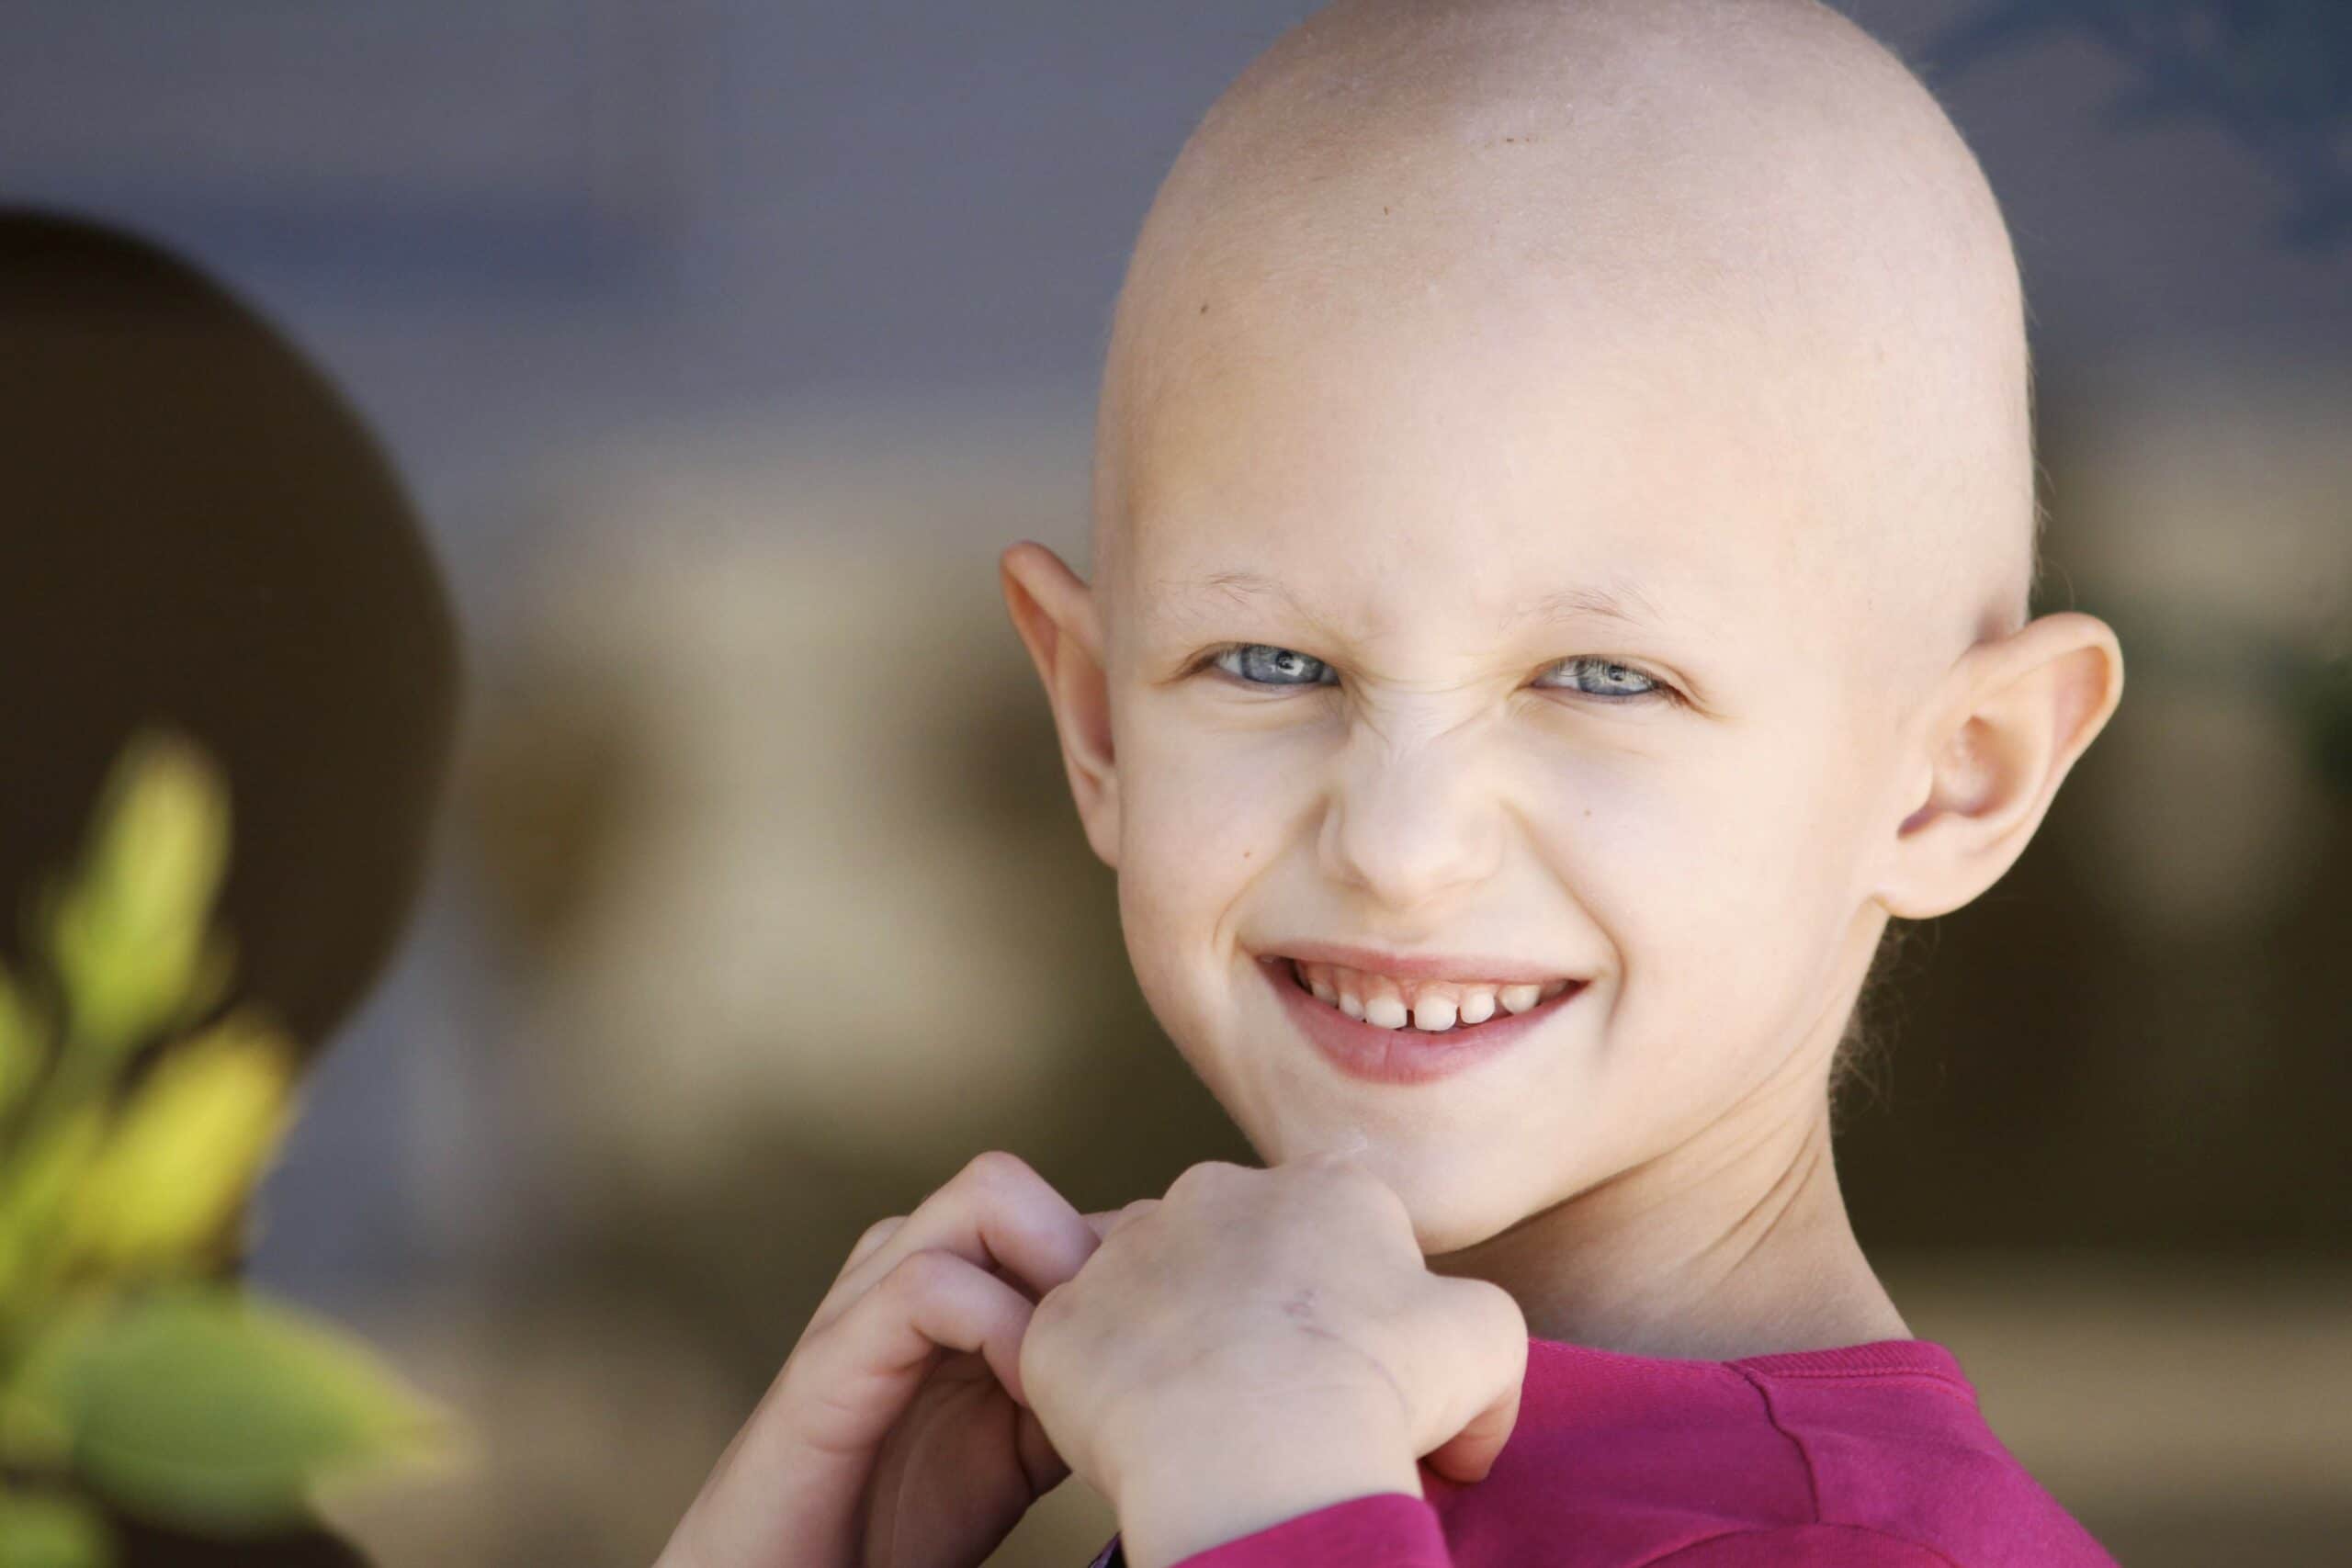 منظور از سرطان در کودکان چیست؟